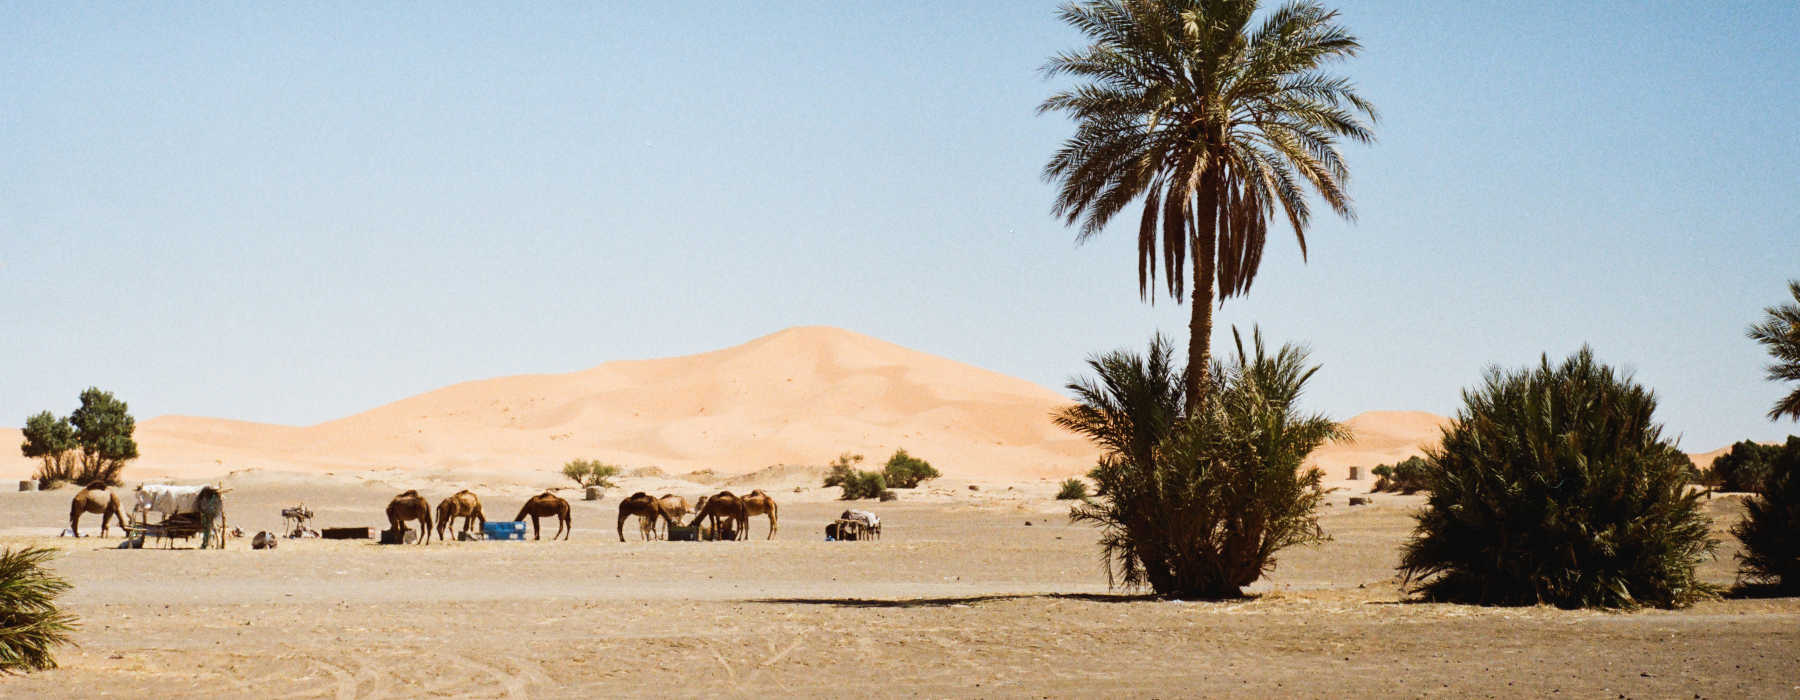 Ouarzazate & the Southern Desert<br class="hidden-md hidden-lg" /> Holidays